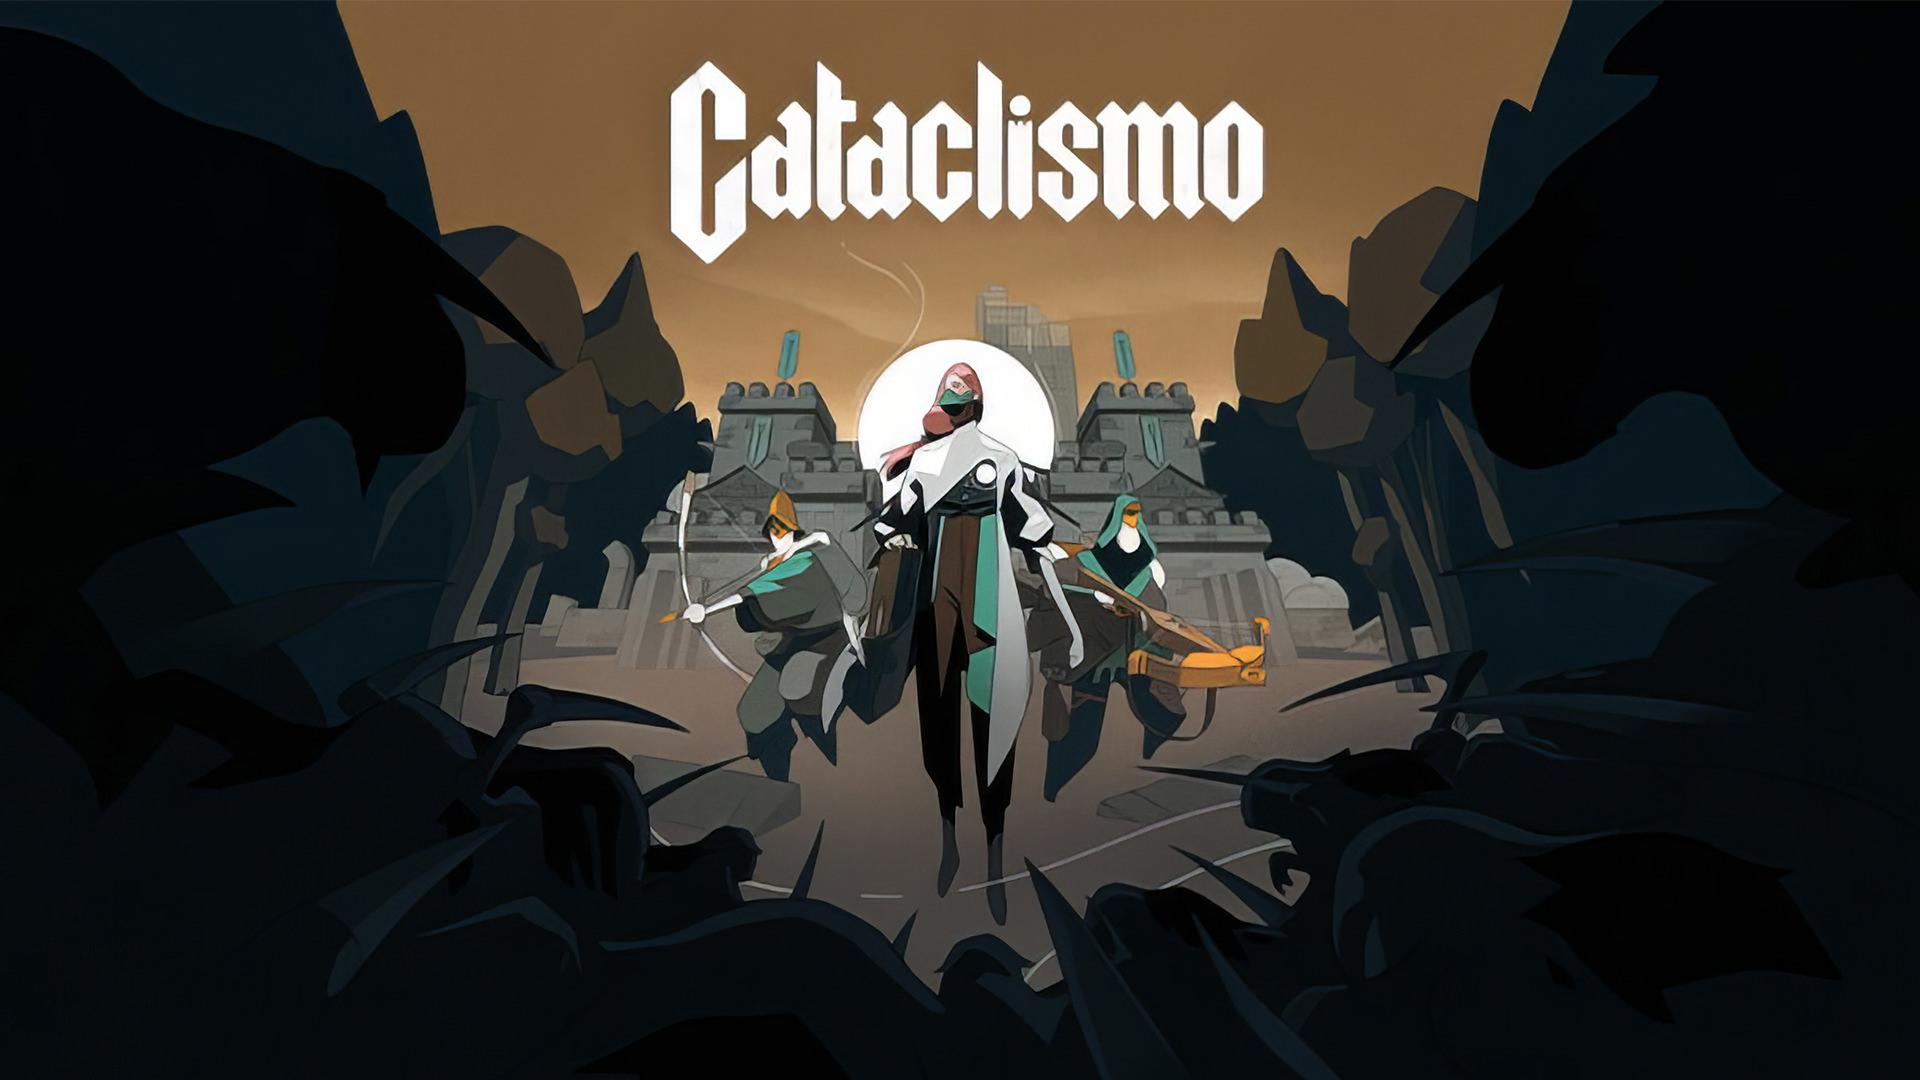 تاریخ انتشار Cataclismo، بازی جدید سازنده Moonlighter اعلام شد